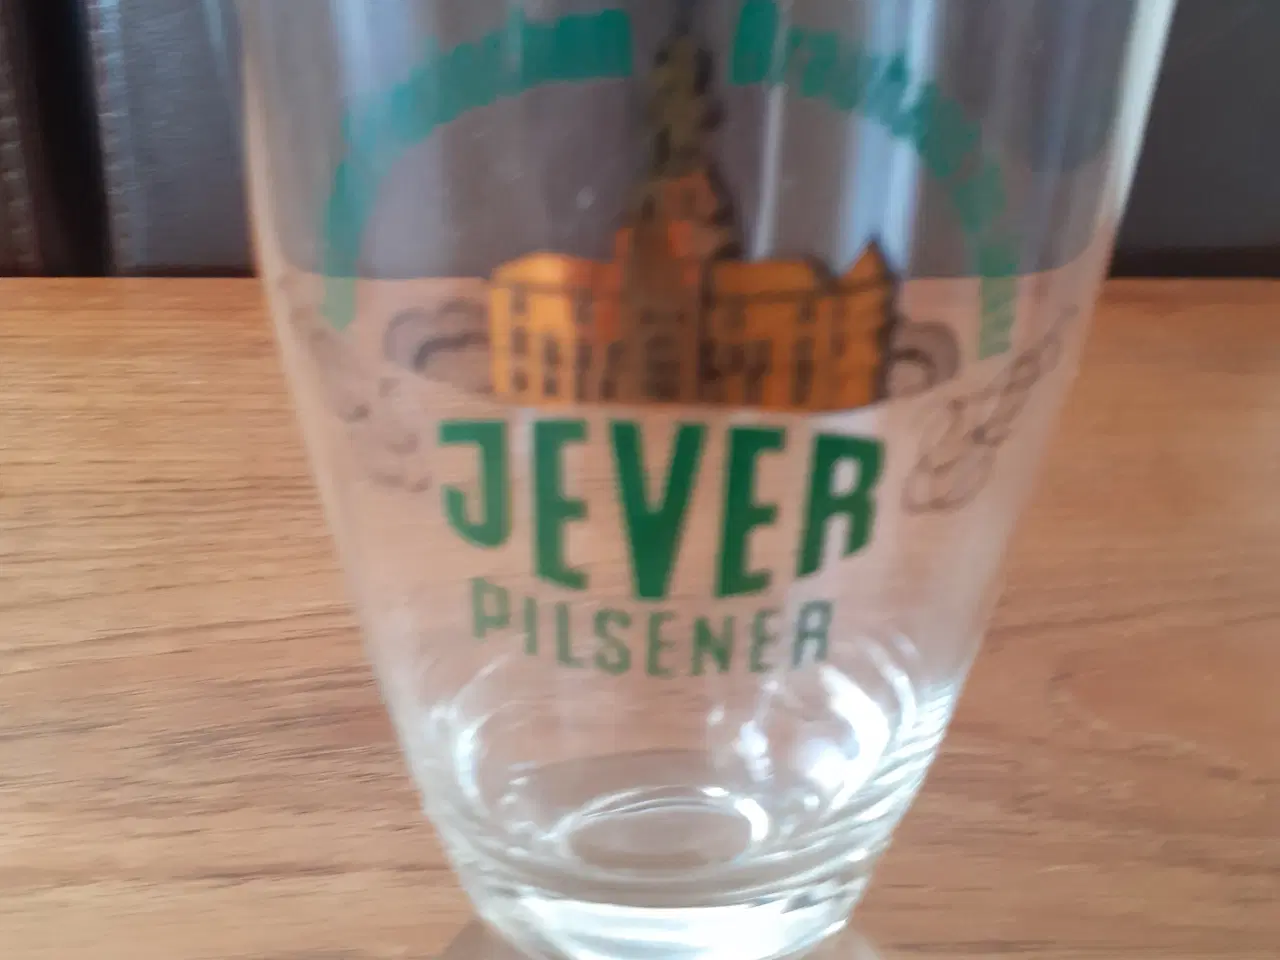 Billede 2 - JEVER Pilsener - sjældent ølglas fra 1970'erne